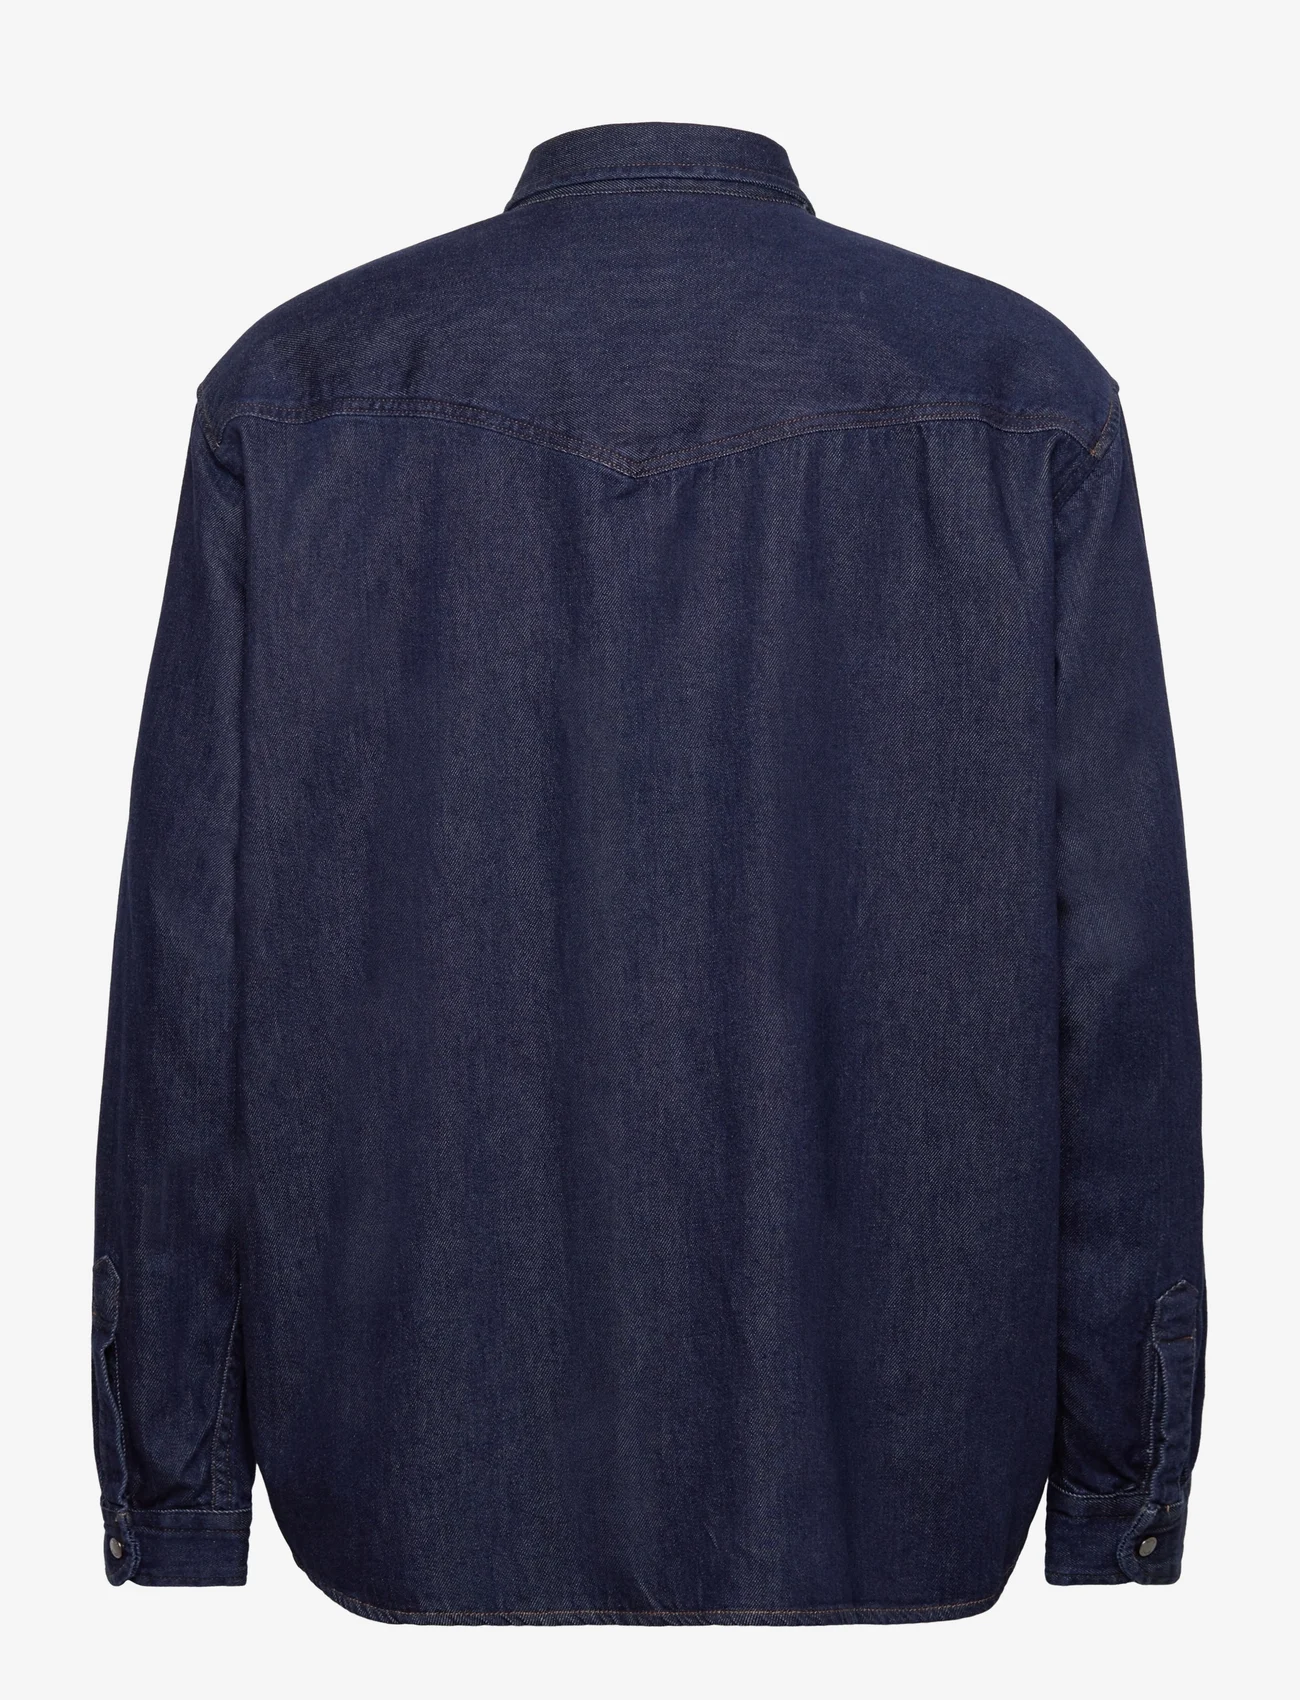 BOSS - Lebop - basic skjorter - dark blue - 1